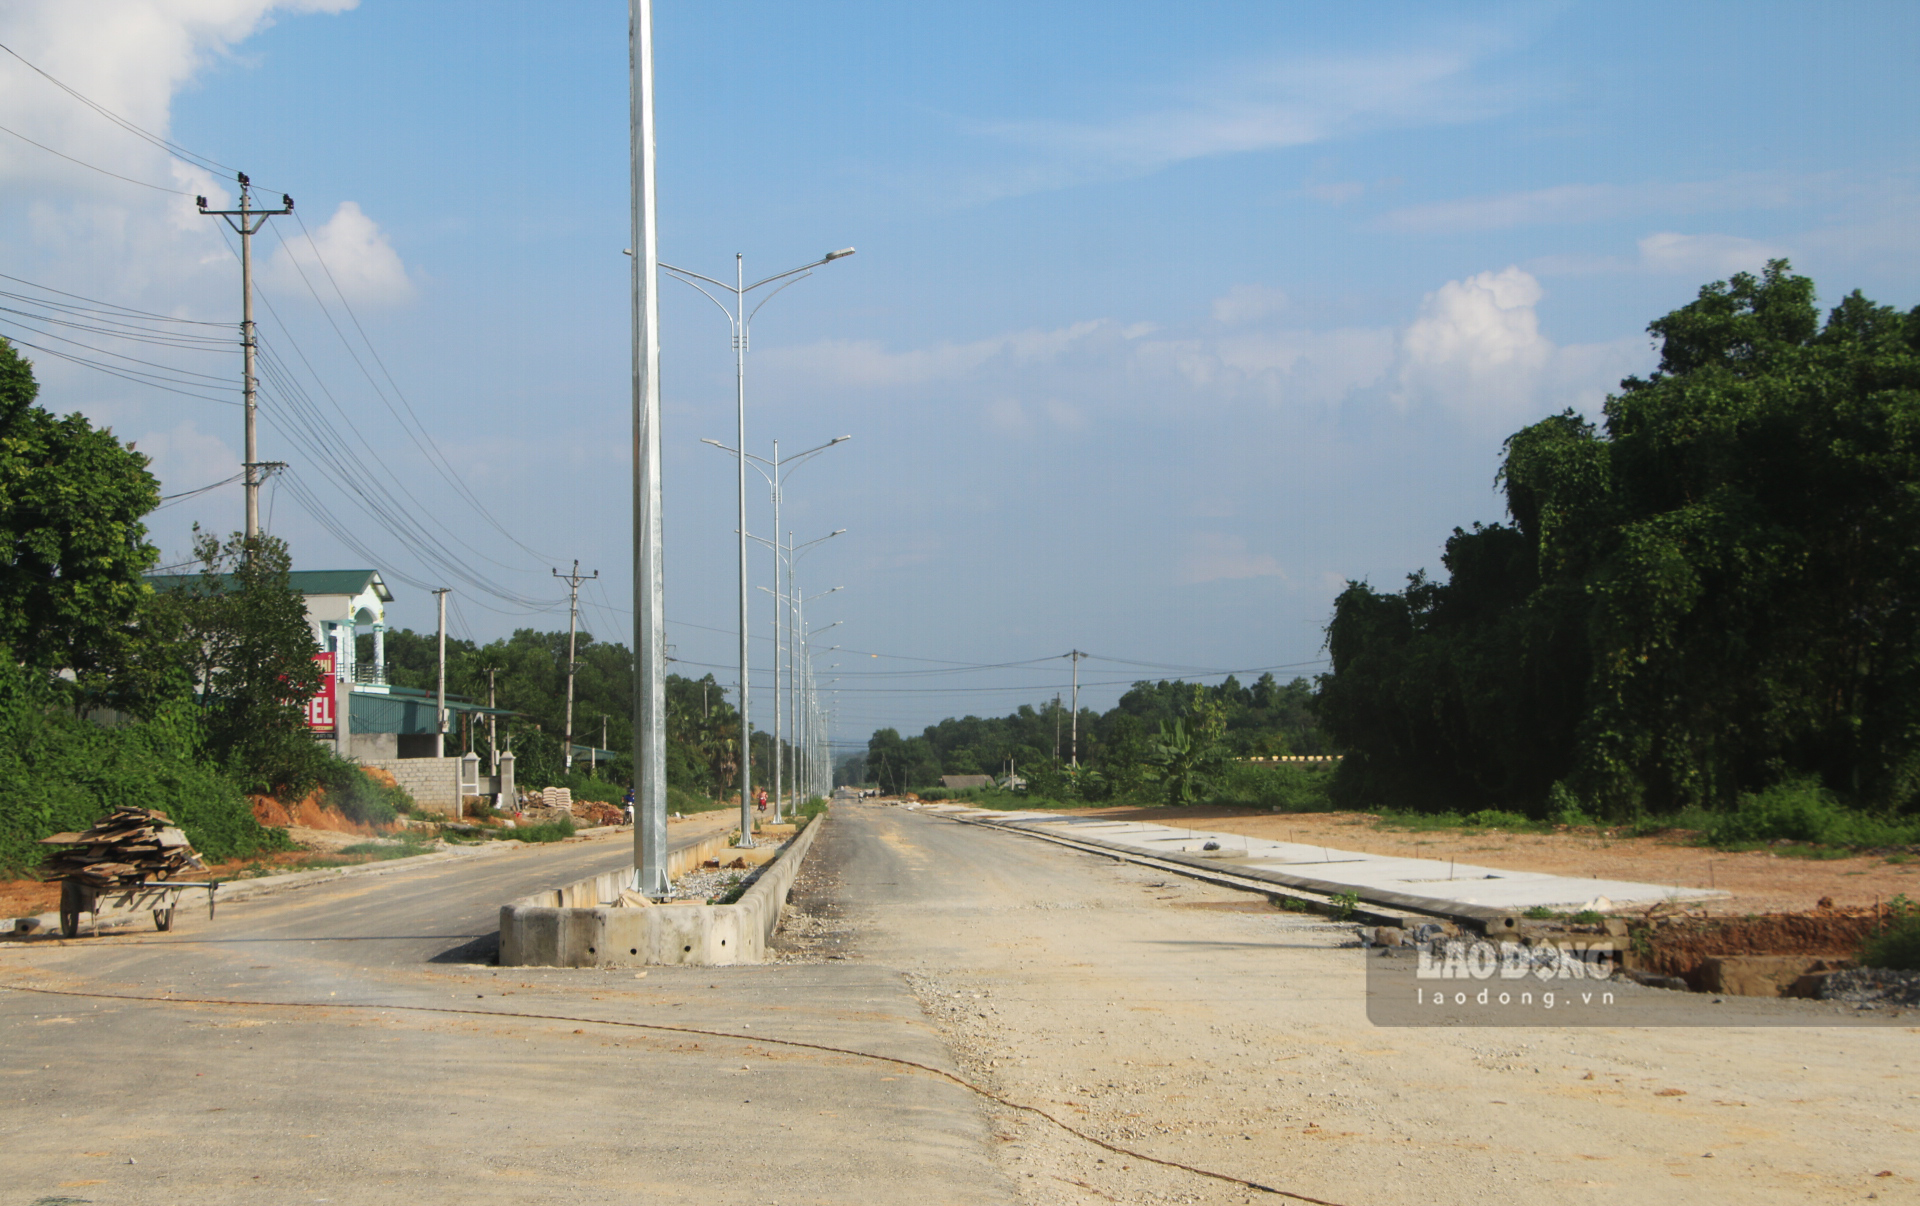 Đoạn đi quan trung tâm huyện Yên Sơn hiện đã hoàn thành trải nhựa lớp 1 phần mặt đường. Hệ thống chiếu sáng được bố trí trên dải phân cách giữa.